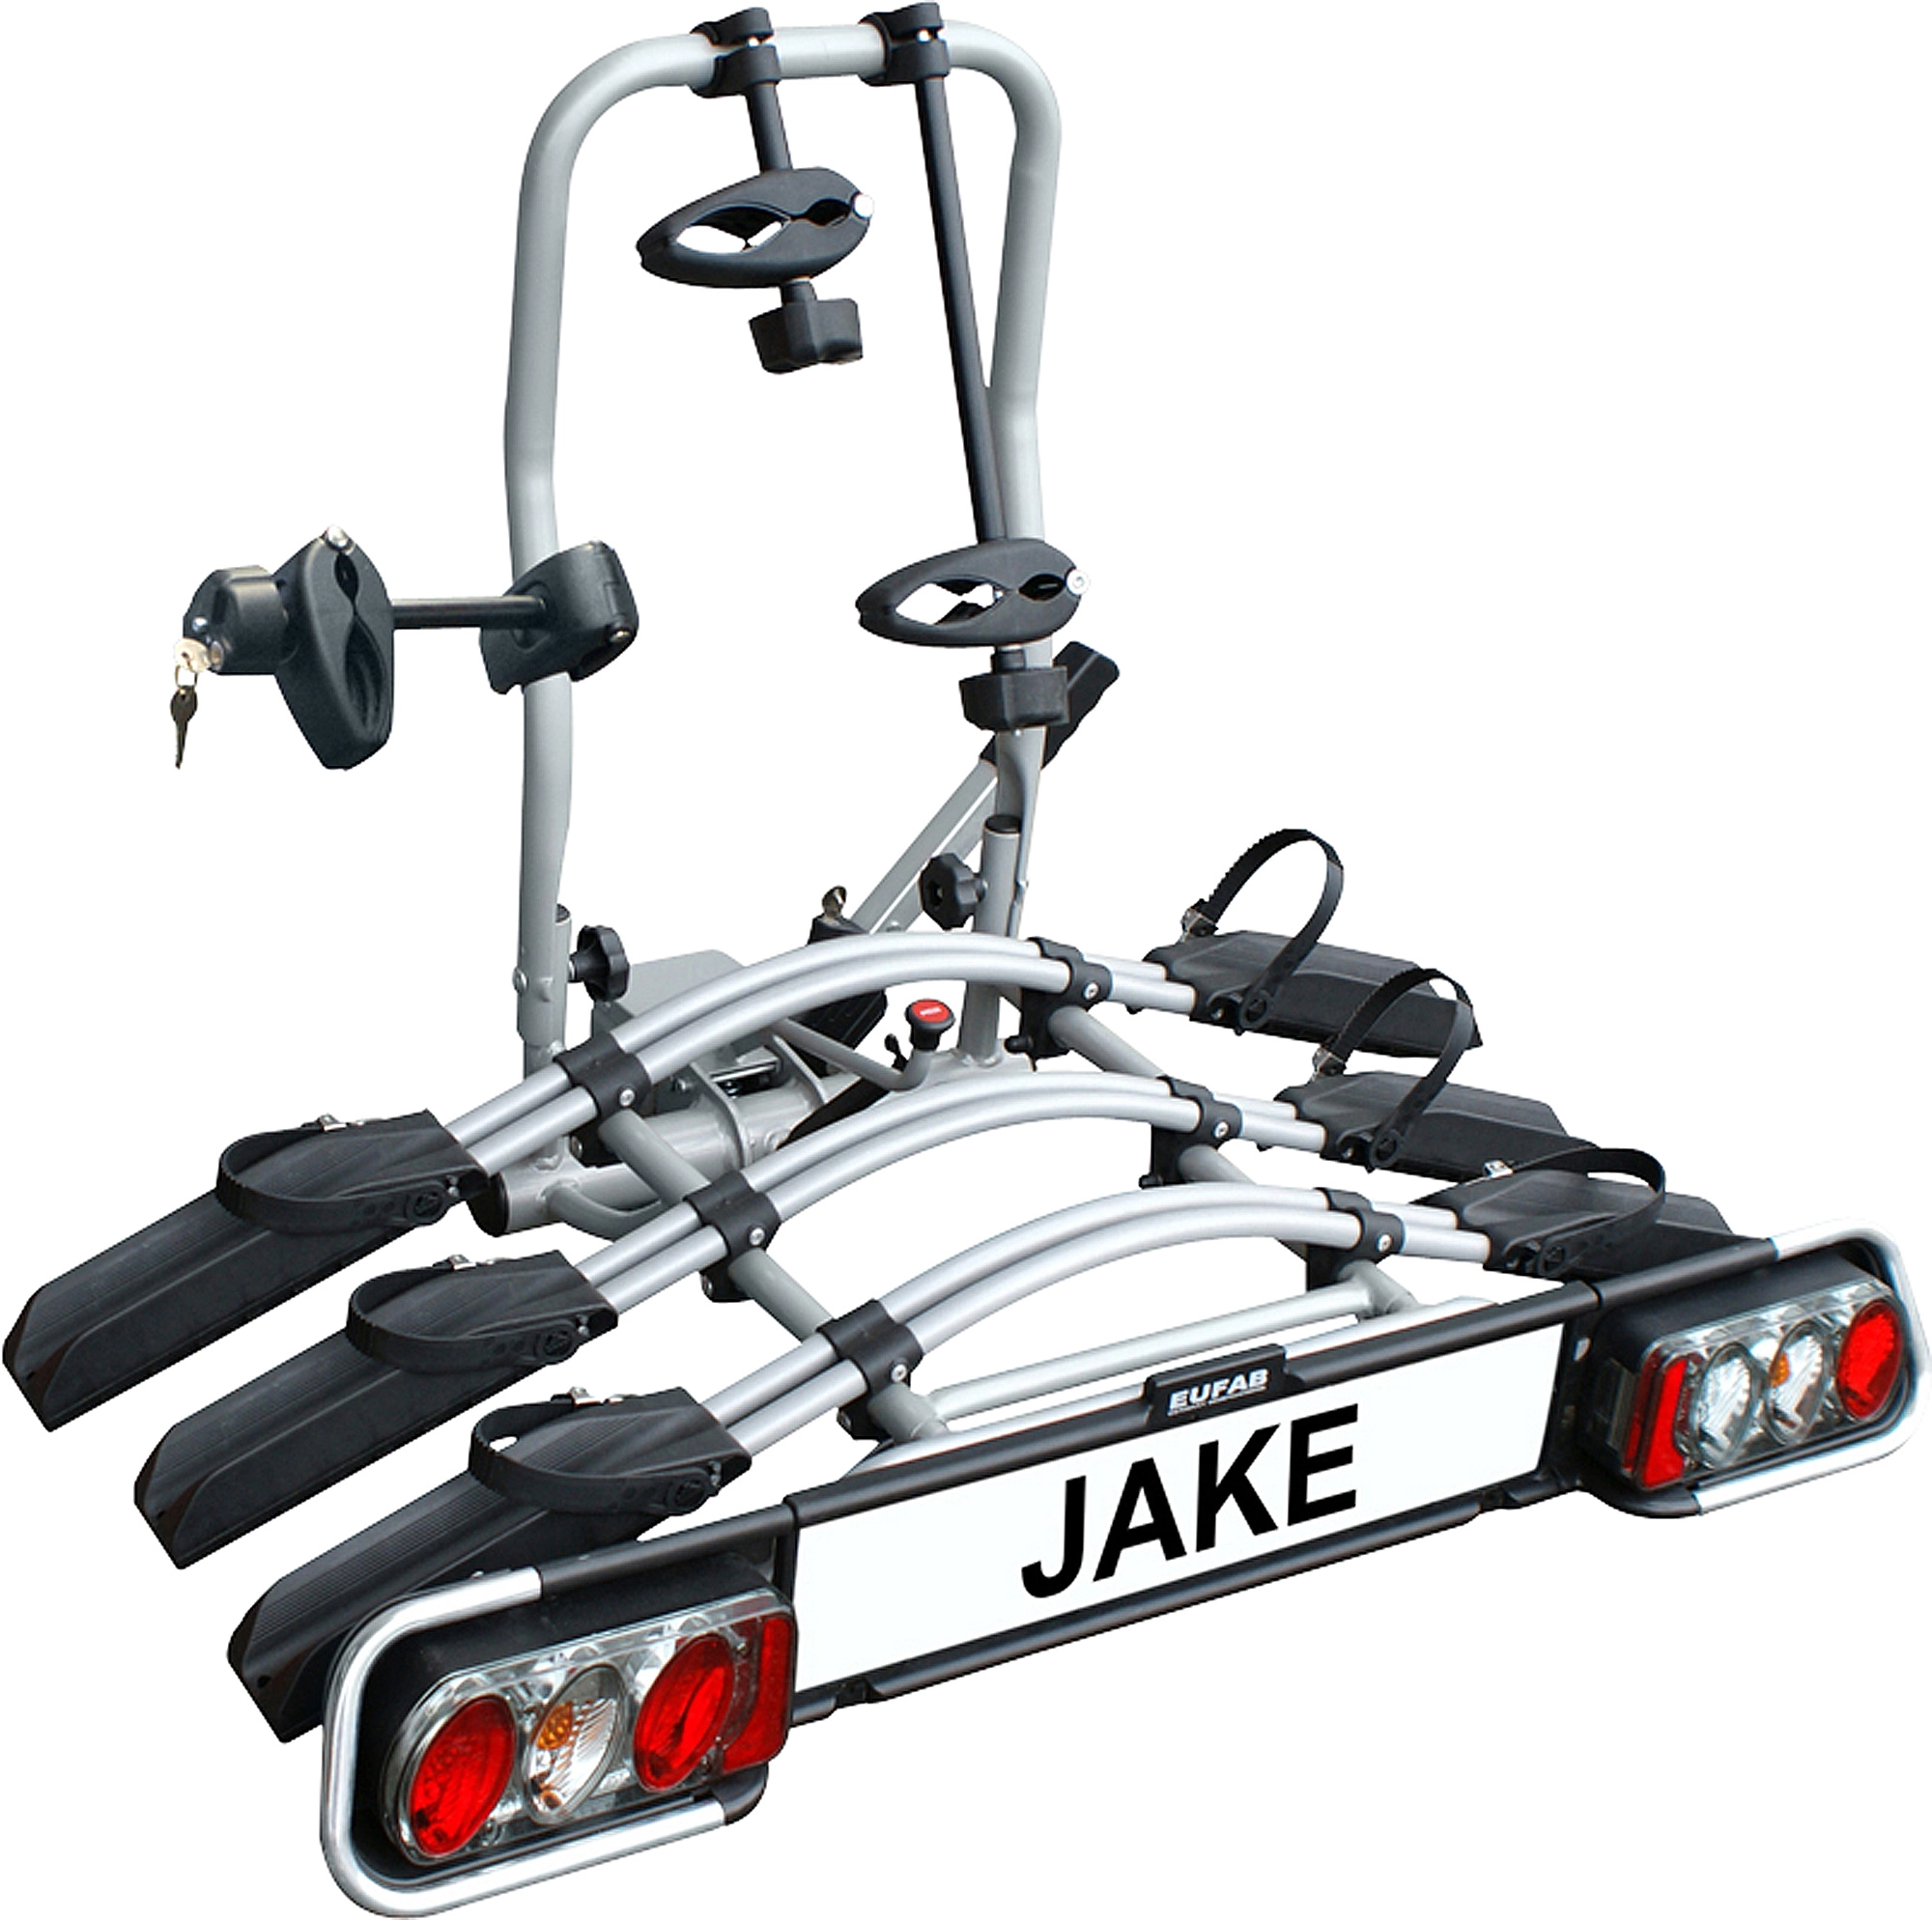 Eufab Fahrradträger-Erweiterung Jake für Fahrrad OBI 3. kaufen bei